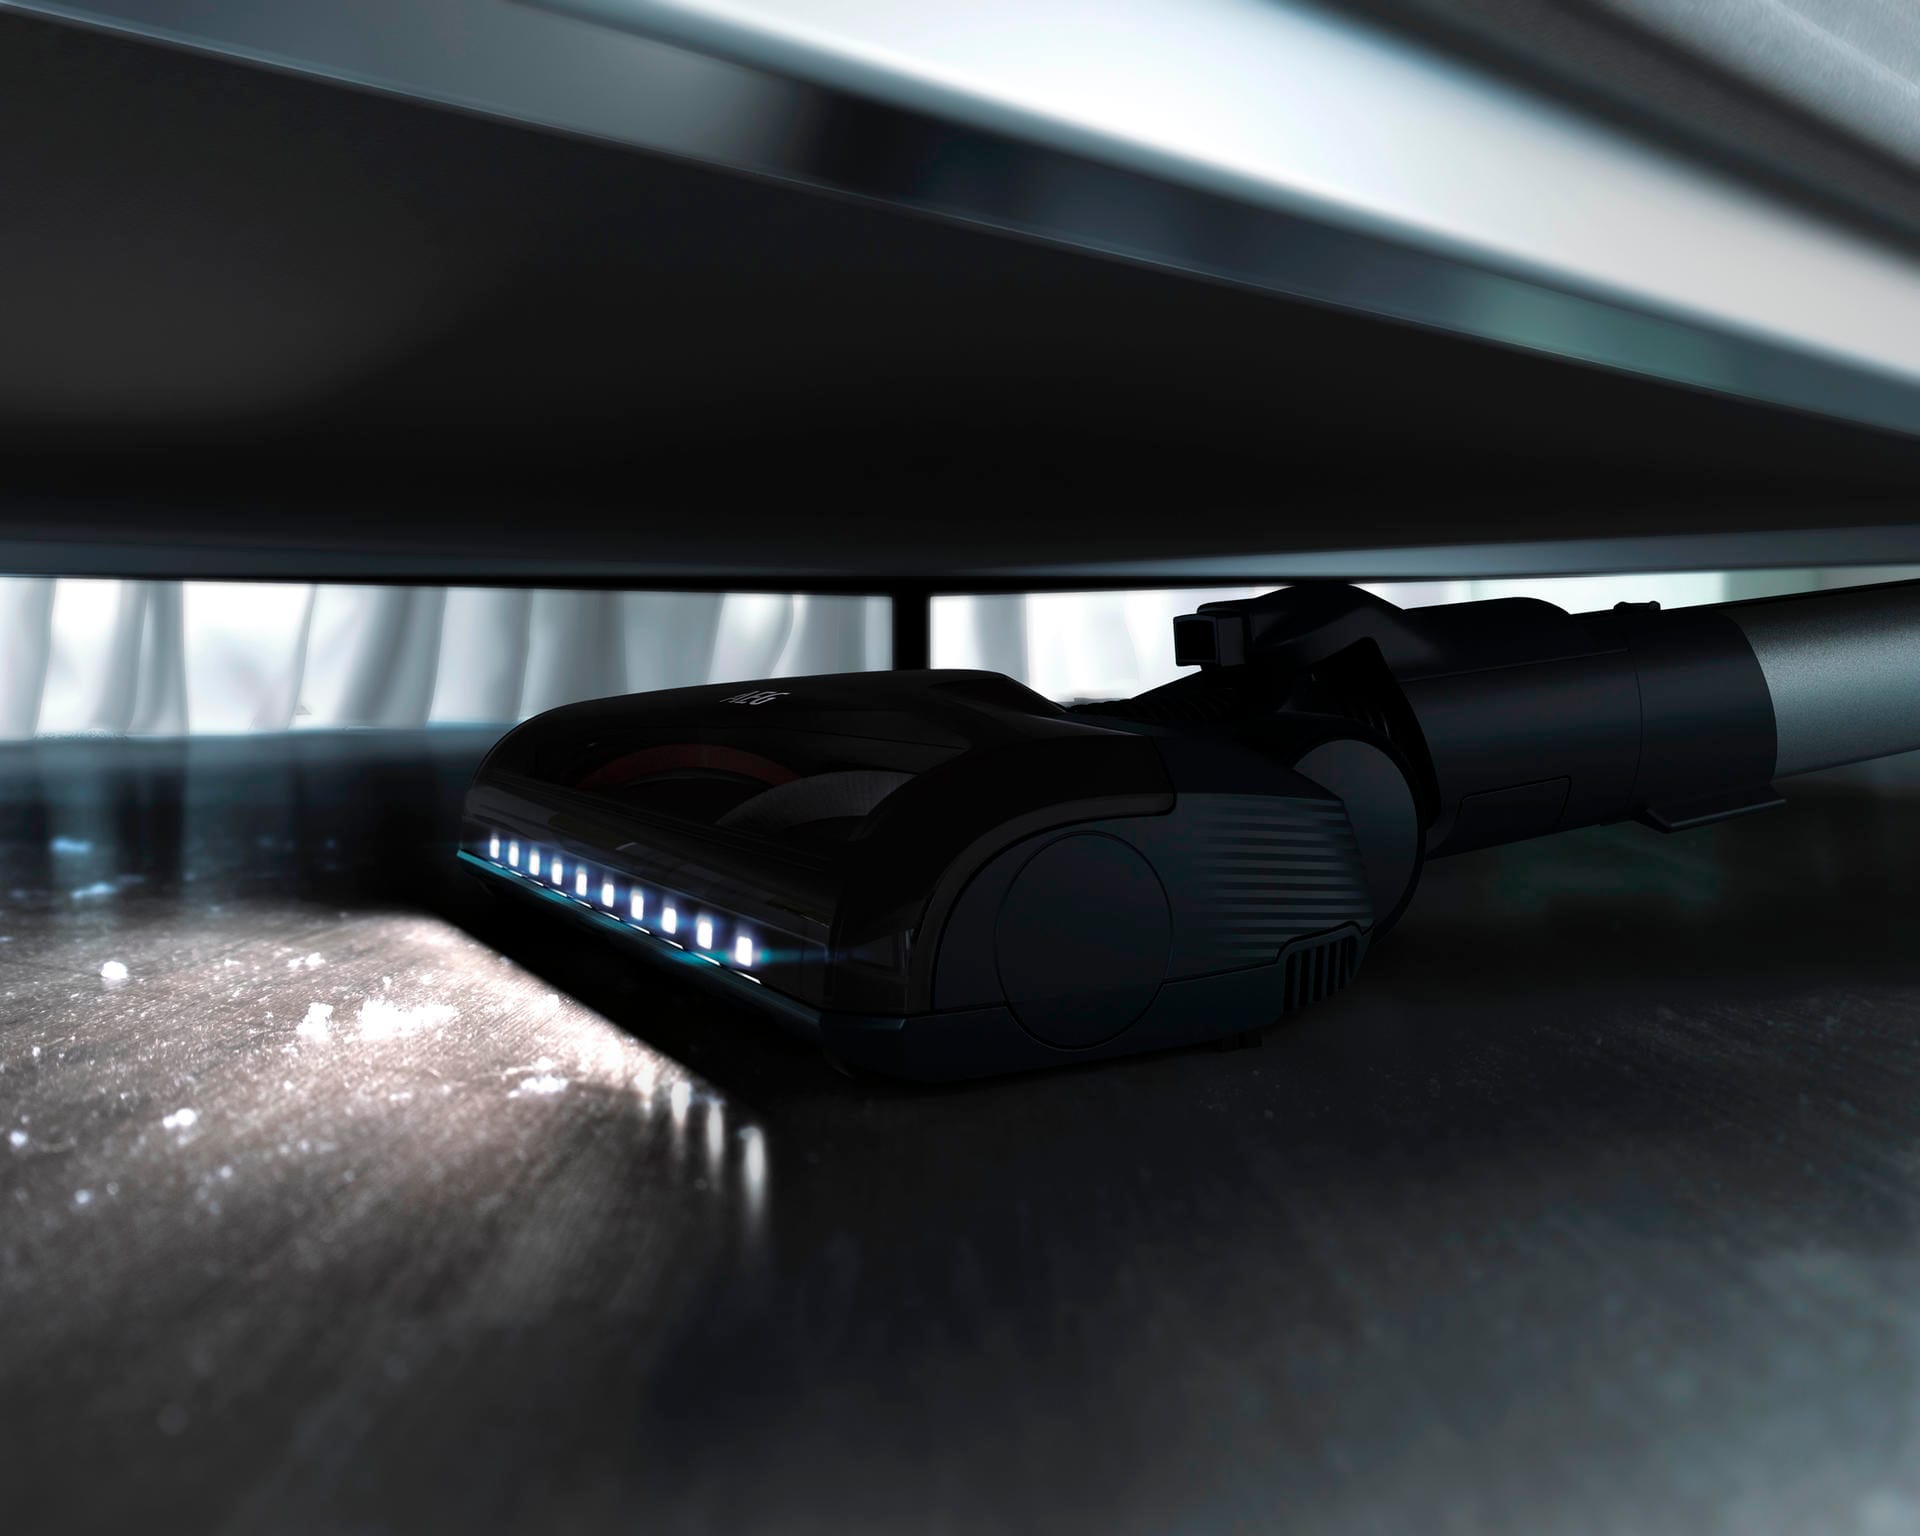 Der Akkusauger FX9 von AEG verfügt vorne über LEDs, so dass zum Beispiel Krümel unter der Couch besser zu sehen sind.